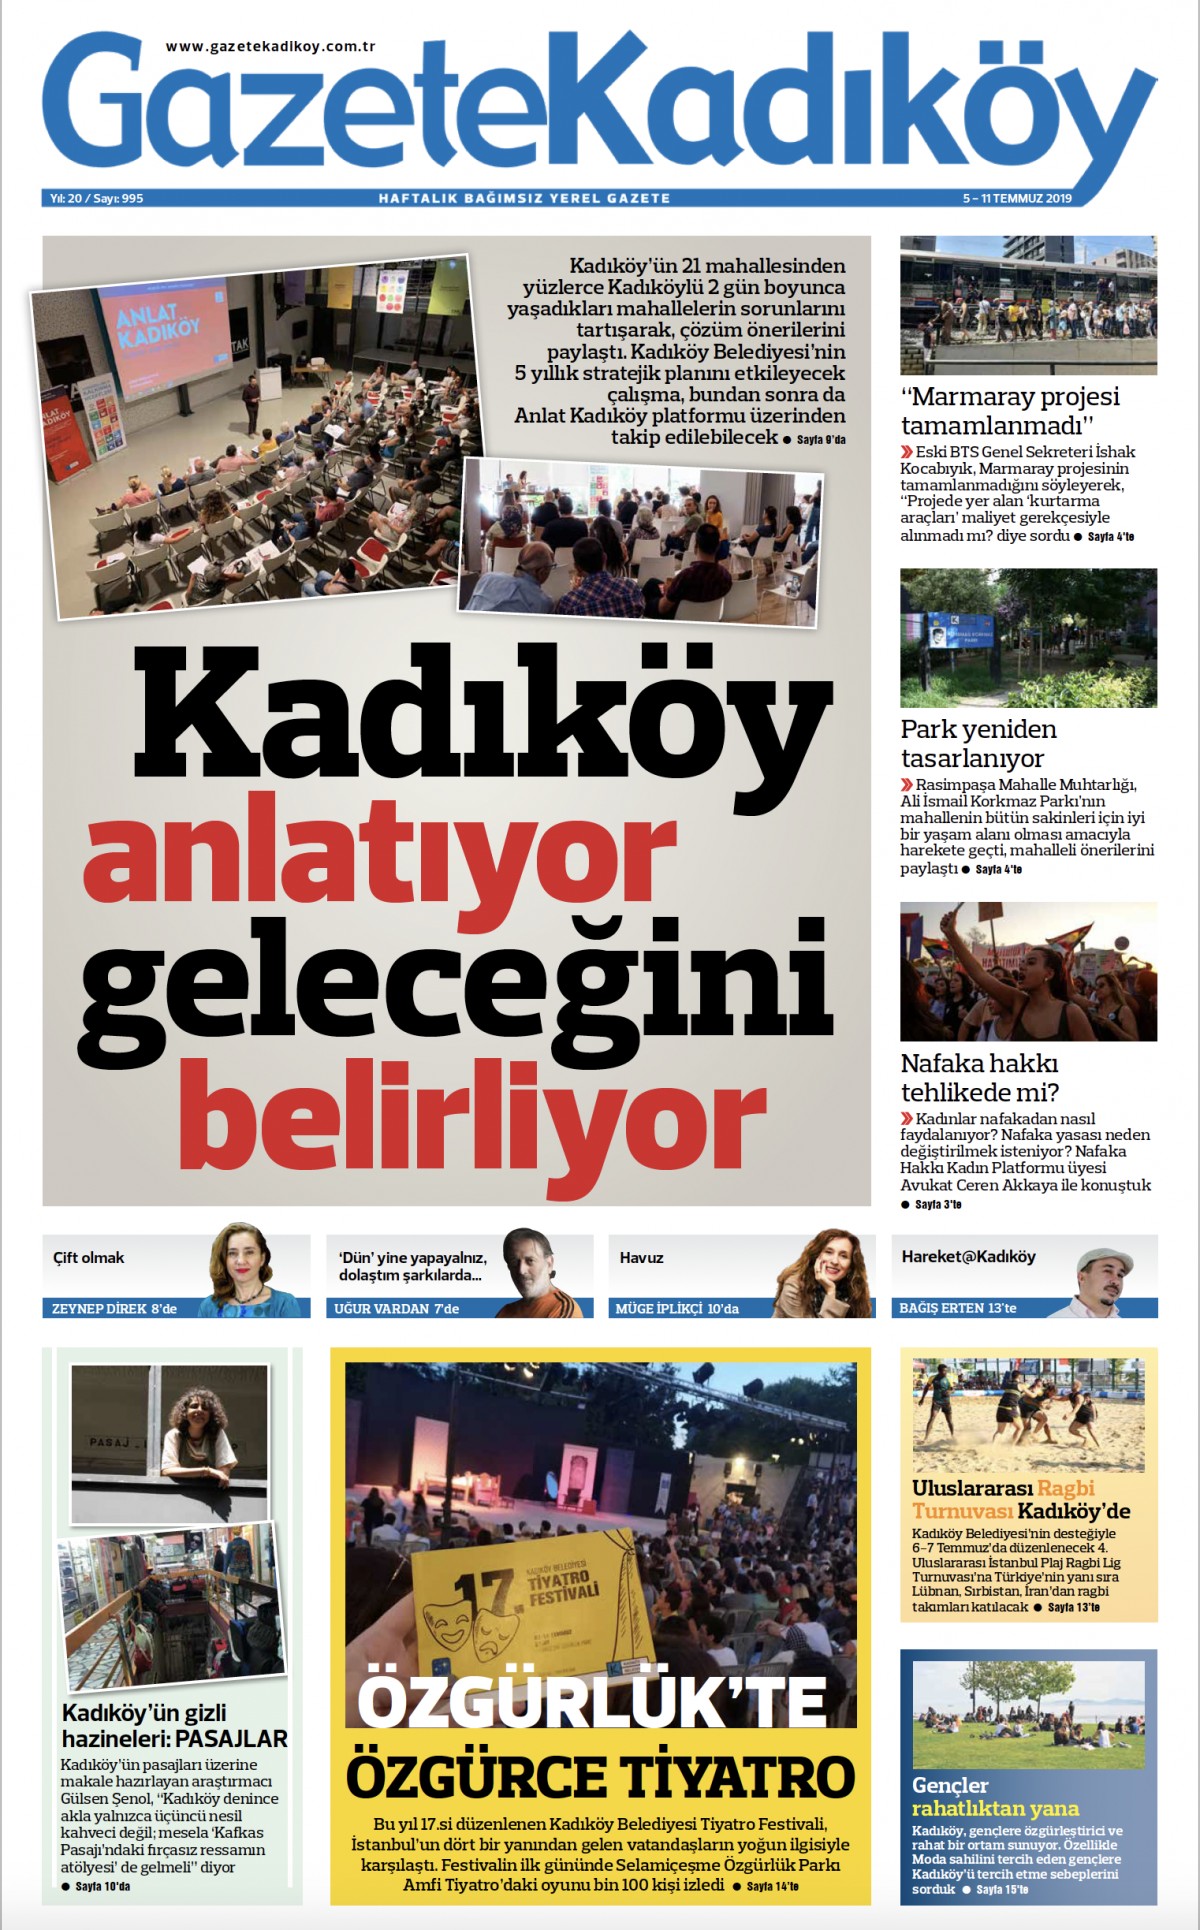 Gazete Kadıköy - 955. Sayı